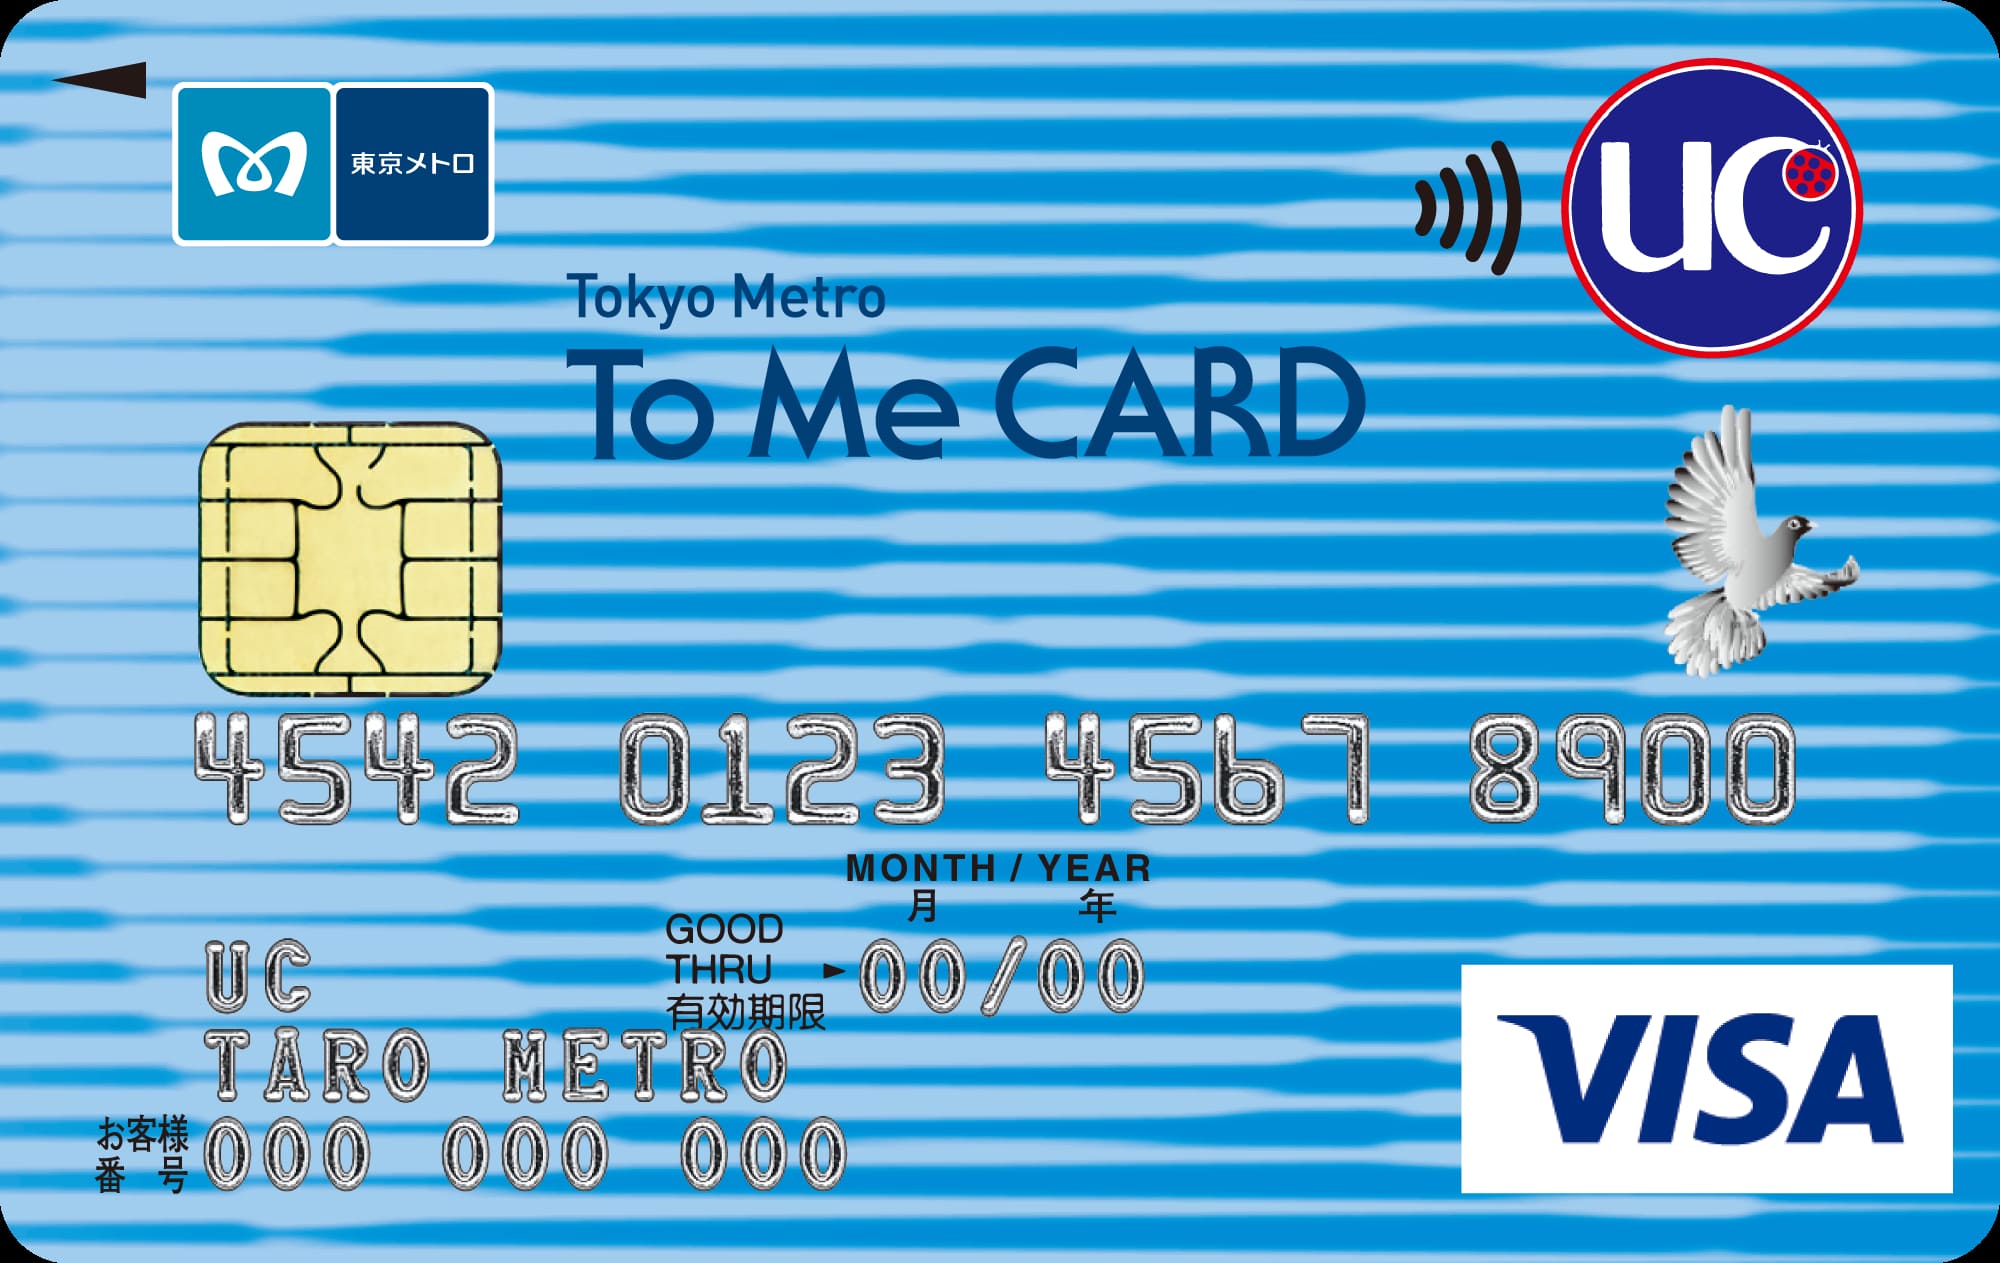 Tokyo Metro To Me CARDのイメージ